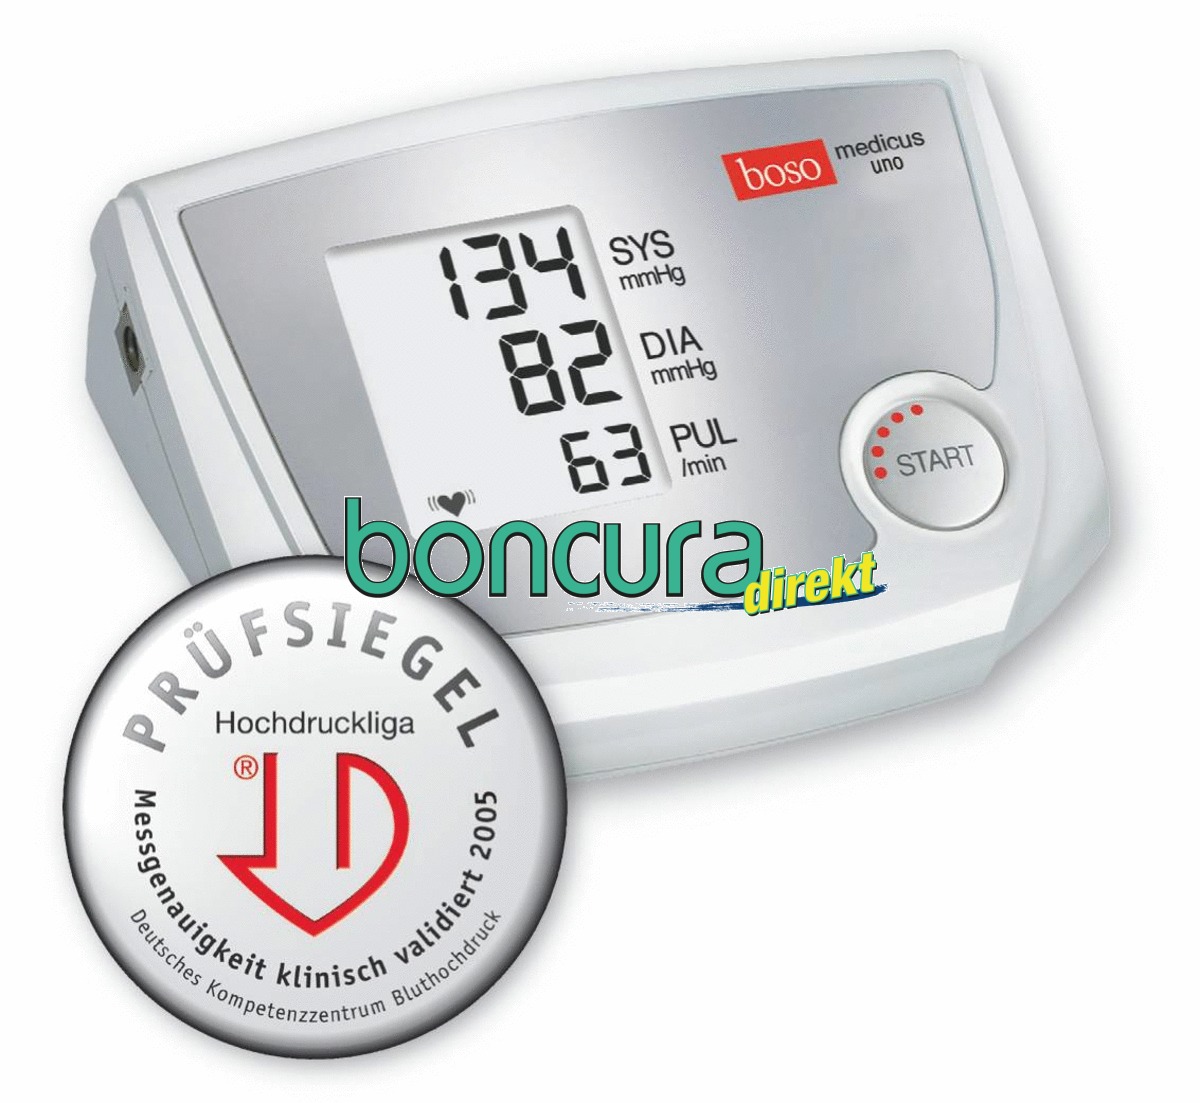 Blutdruckmessgerät Modell: BOSO medicus uno